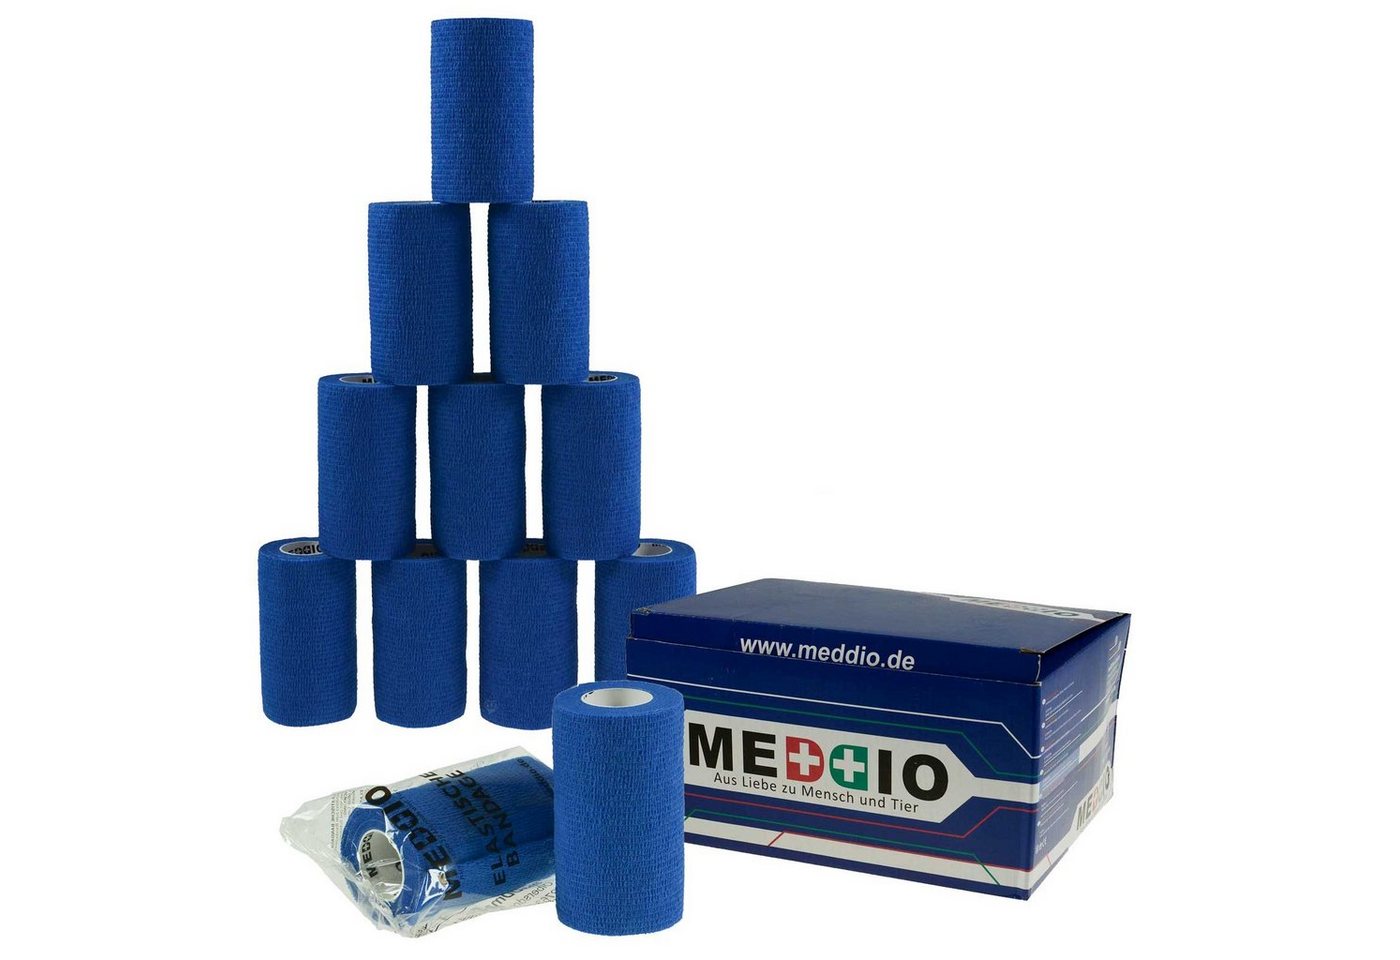 meDDio Pferdebandage 12 Haftbandagen Größe+Farbe wählbar, blue von meDDio